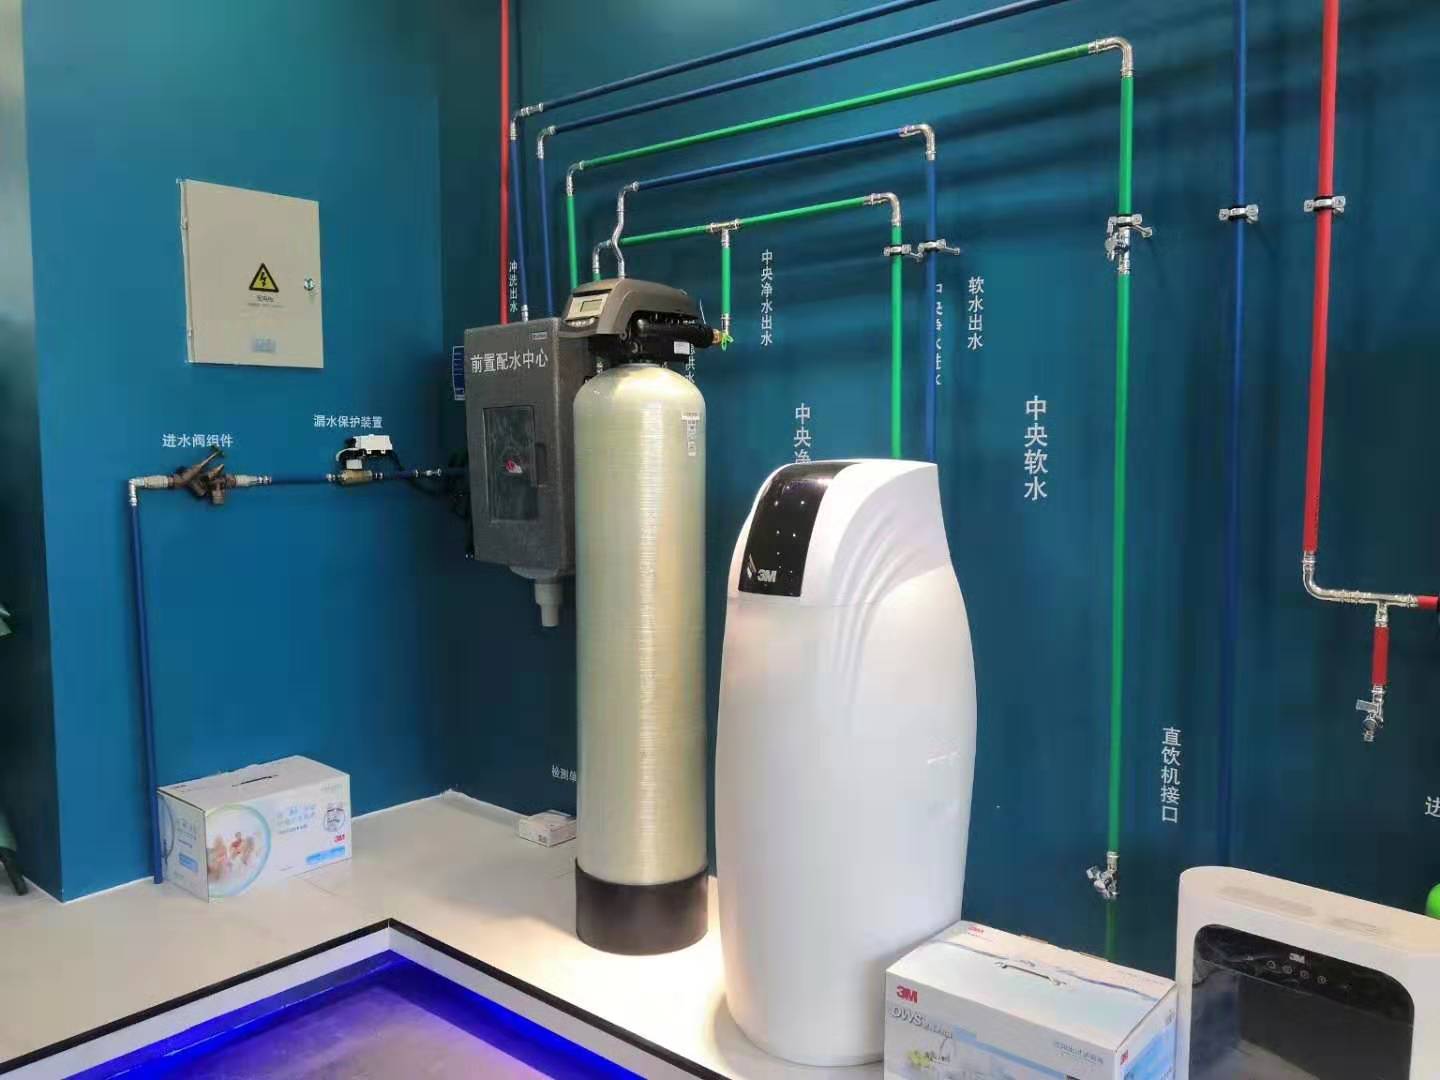 乌鲁木齐质量好净水器生产厂家_其它热水器相关-新疆森林之歌智能科技有限公司